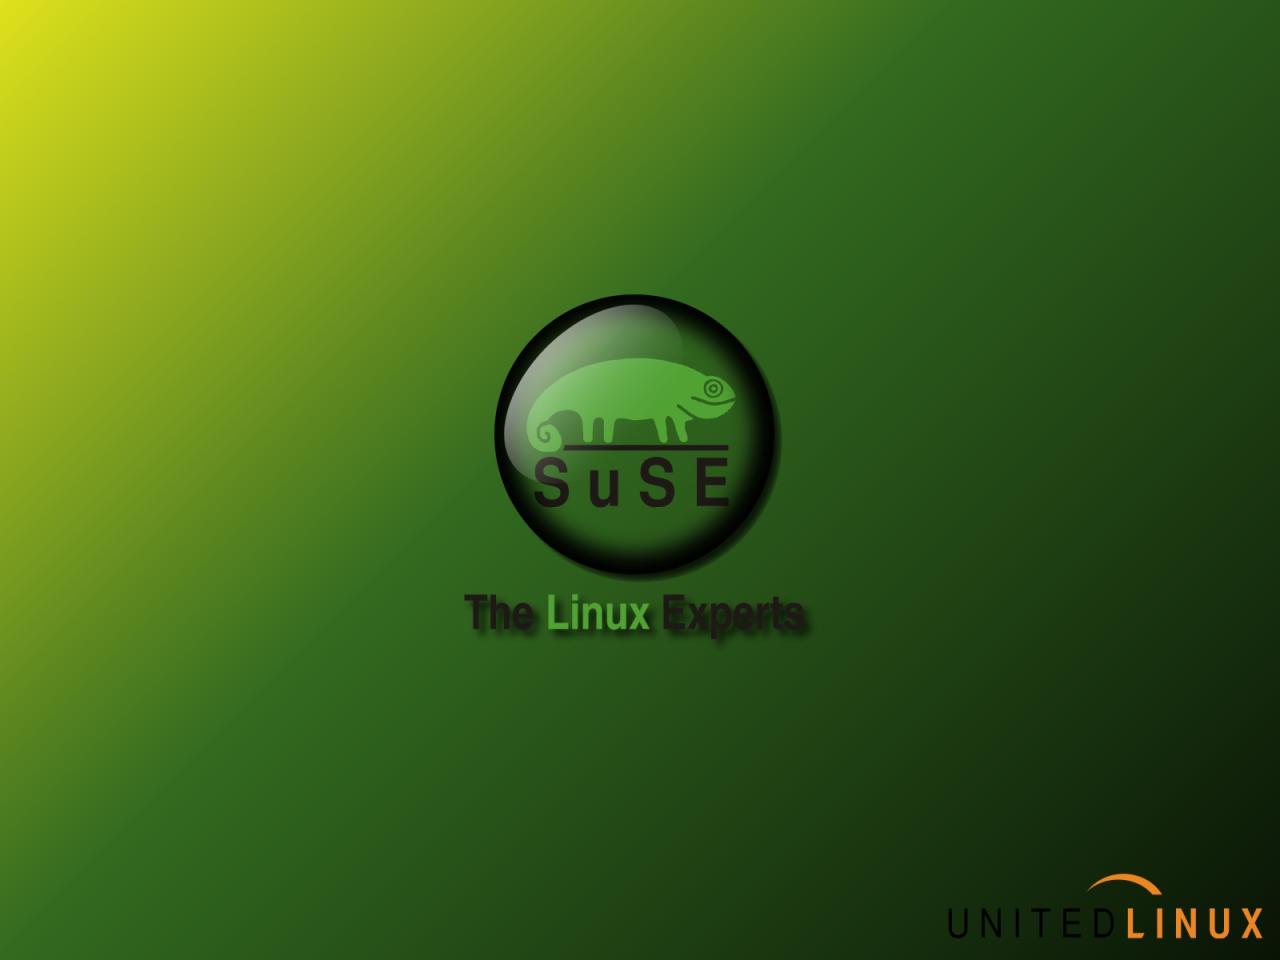 Linux Suse Wallpaper Next Image Xp